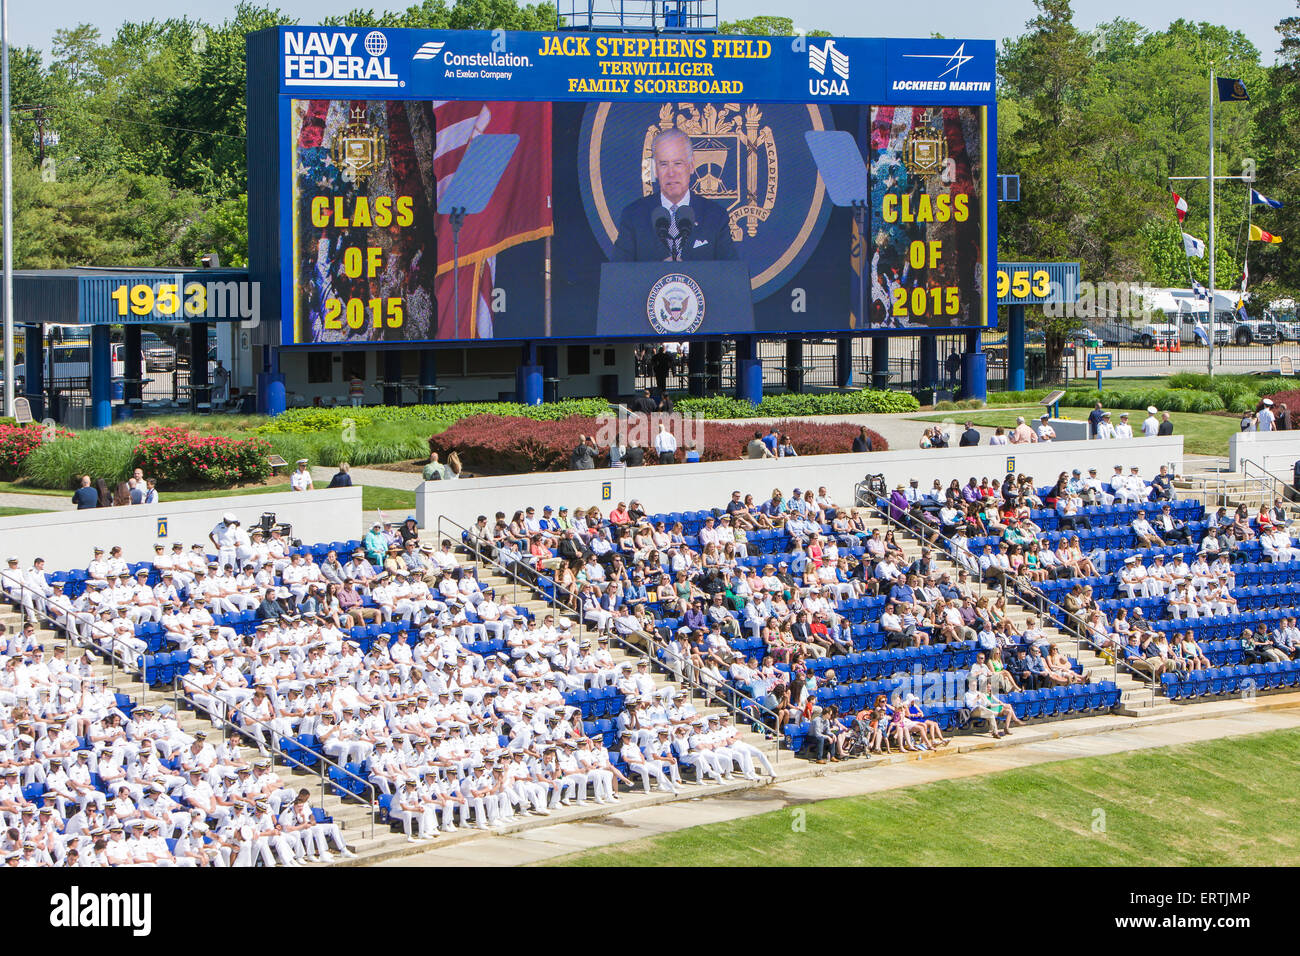 Midshipmen zusehen, wie Joe Biden auf der Anzeigetafel Bildschirm 2015 uns Naval Academy südkoreanischem spricht. Stockfoto